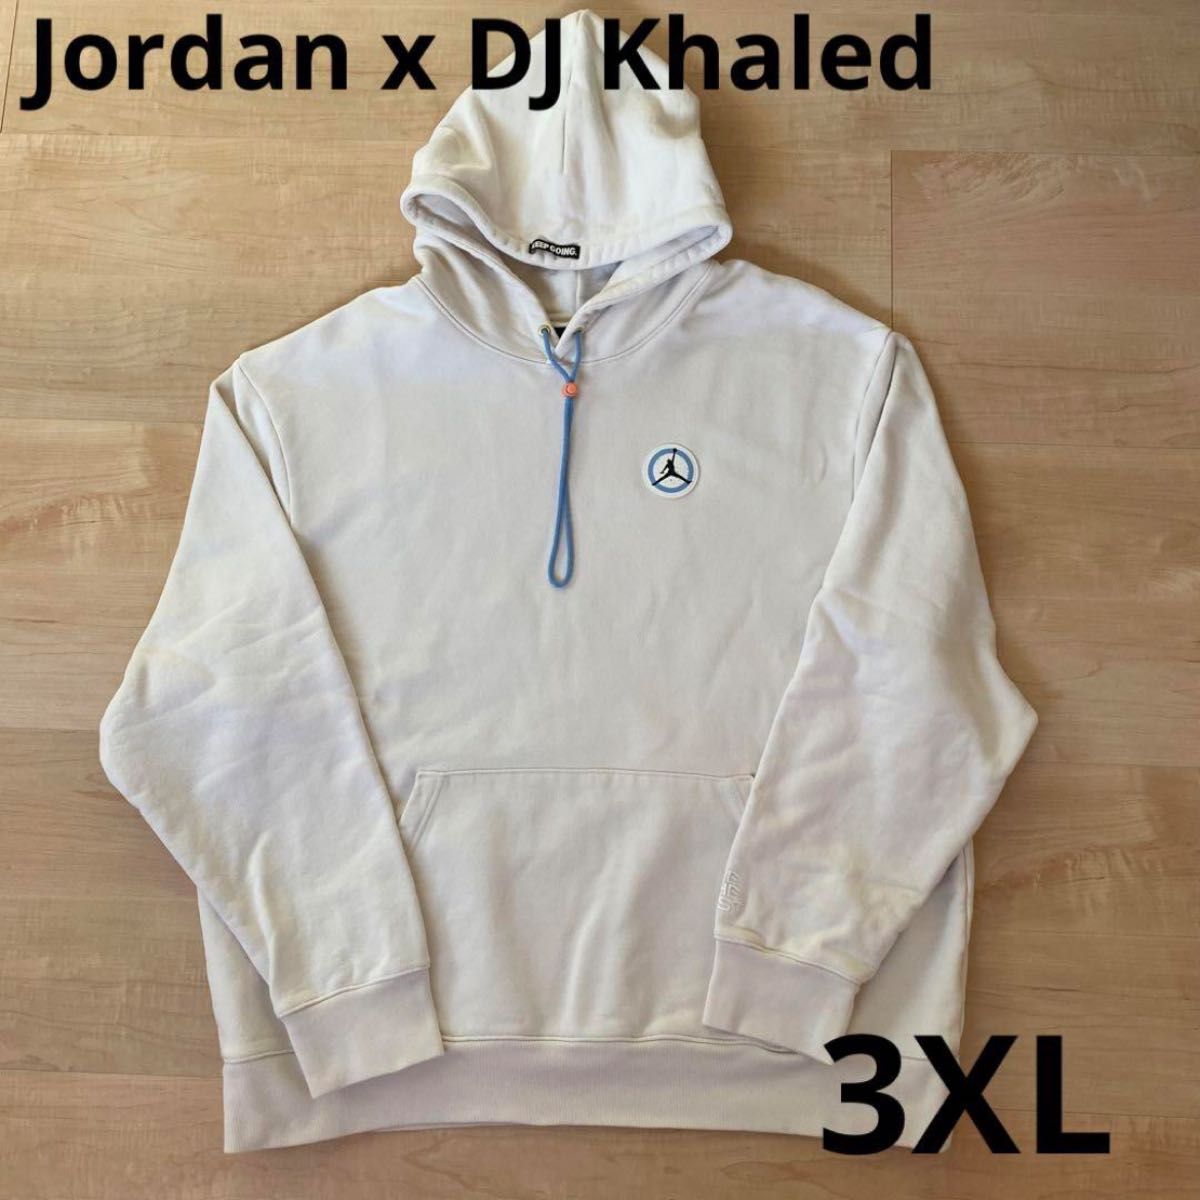 ジョーダン x DJ キャレド メンズジャケット-